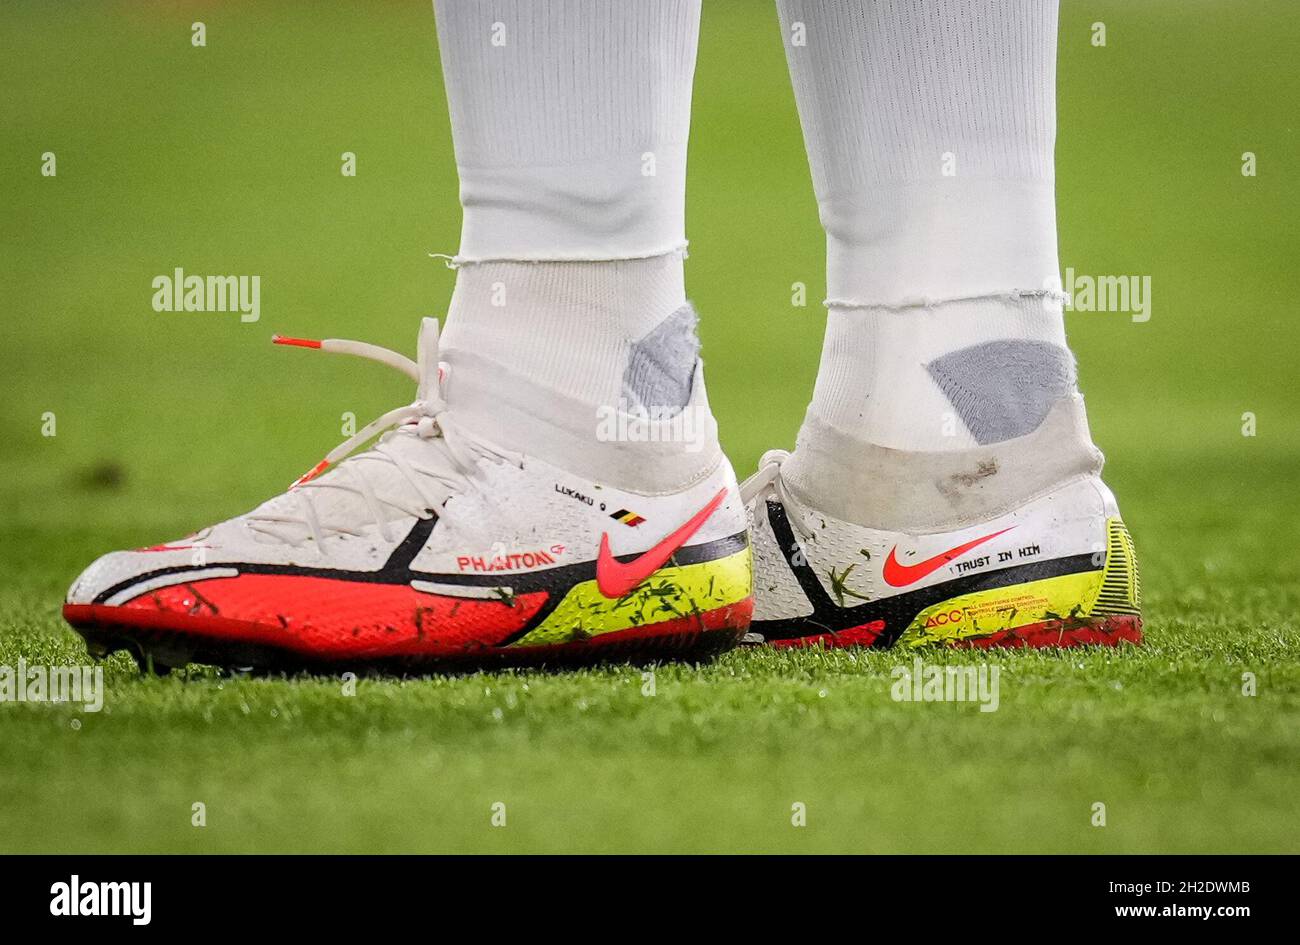 Londra, Regno Unito. 20 Ott 2021. Le scarpe da calcio Nike Phantom  personalizzate di Romelu Lukaku di Chelsea, che hanno esibito ÔTRUST A HIMÕ  durante la partita della UEFA Champions League tra